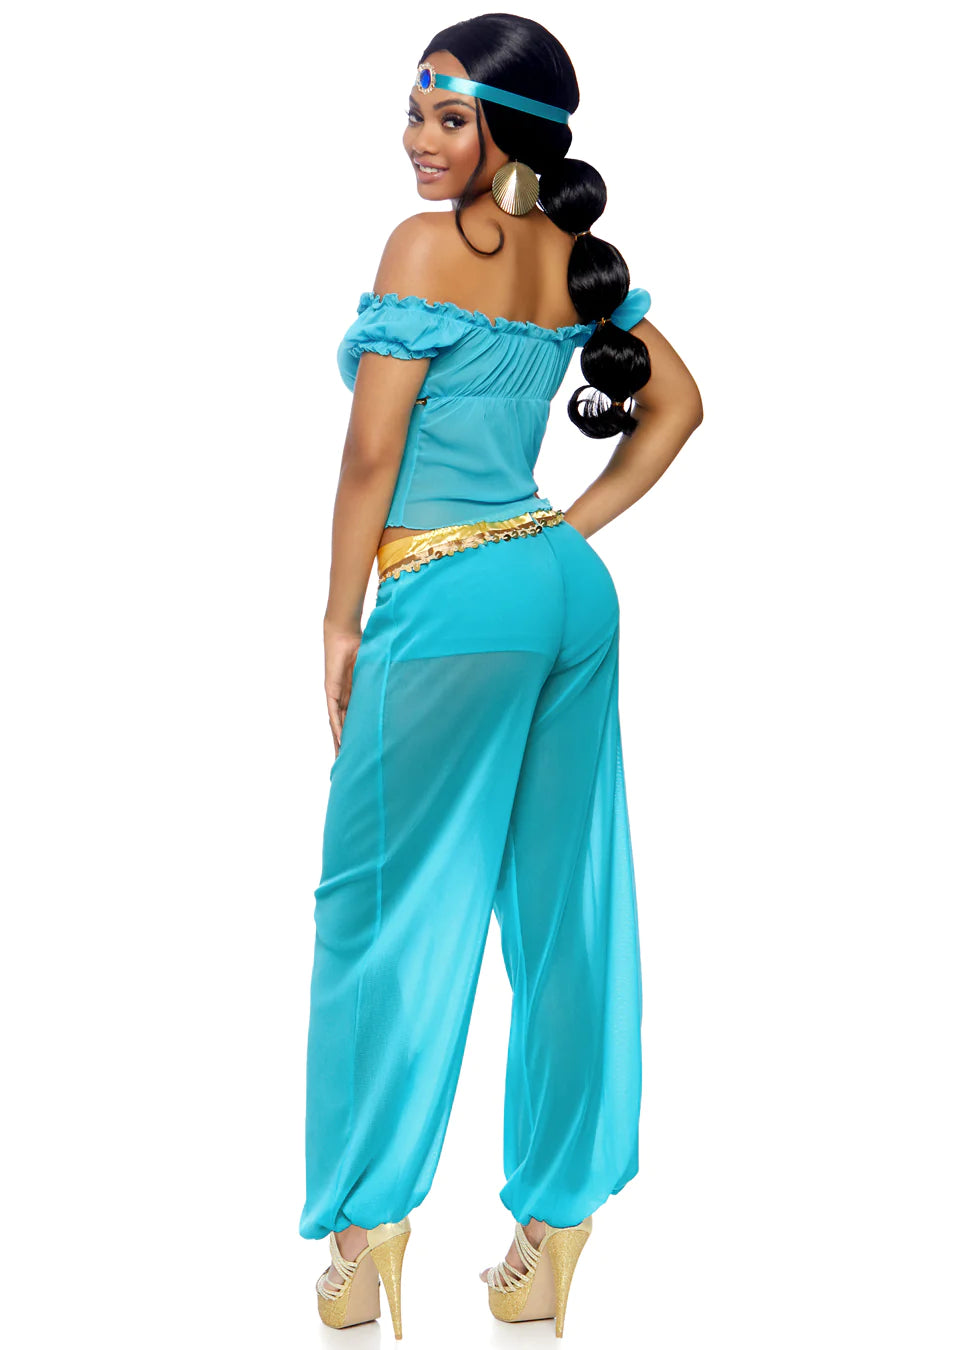 Arabian Beauty Women's Costume